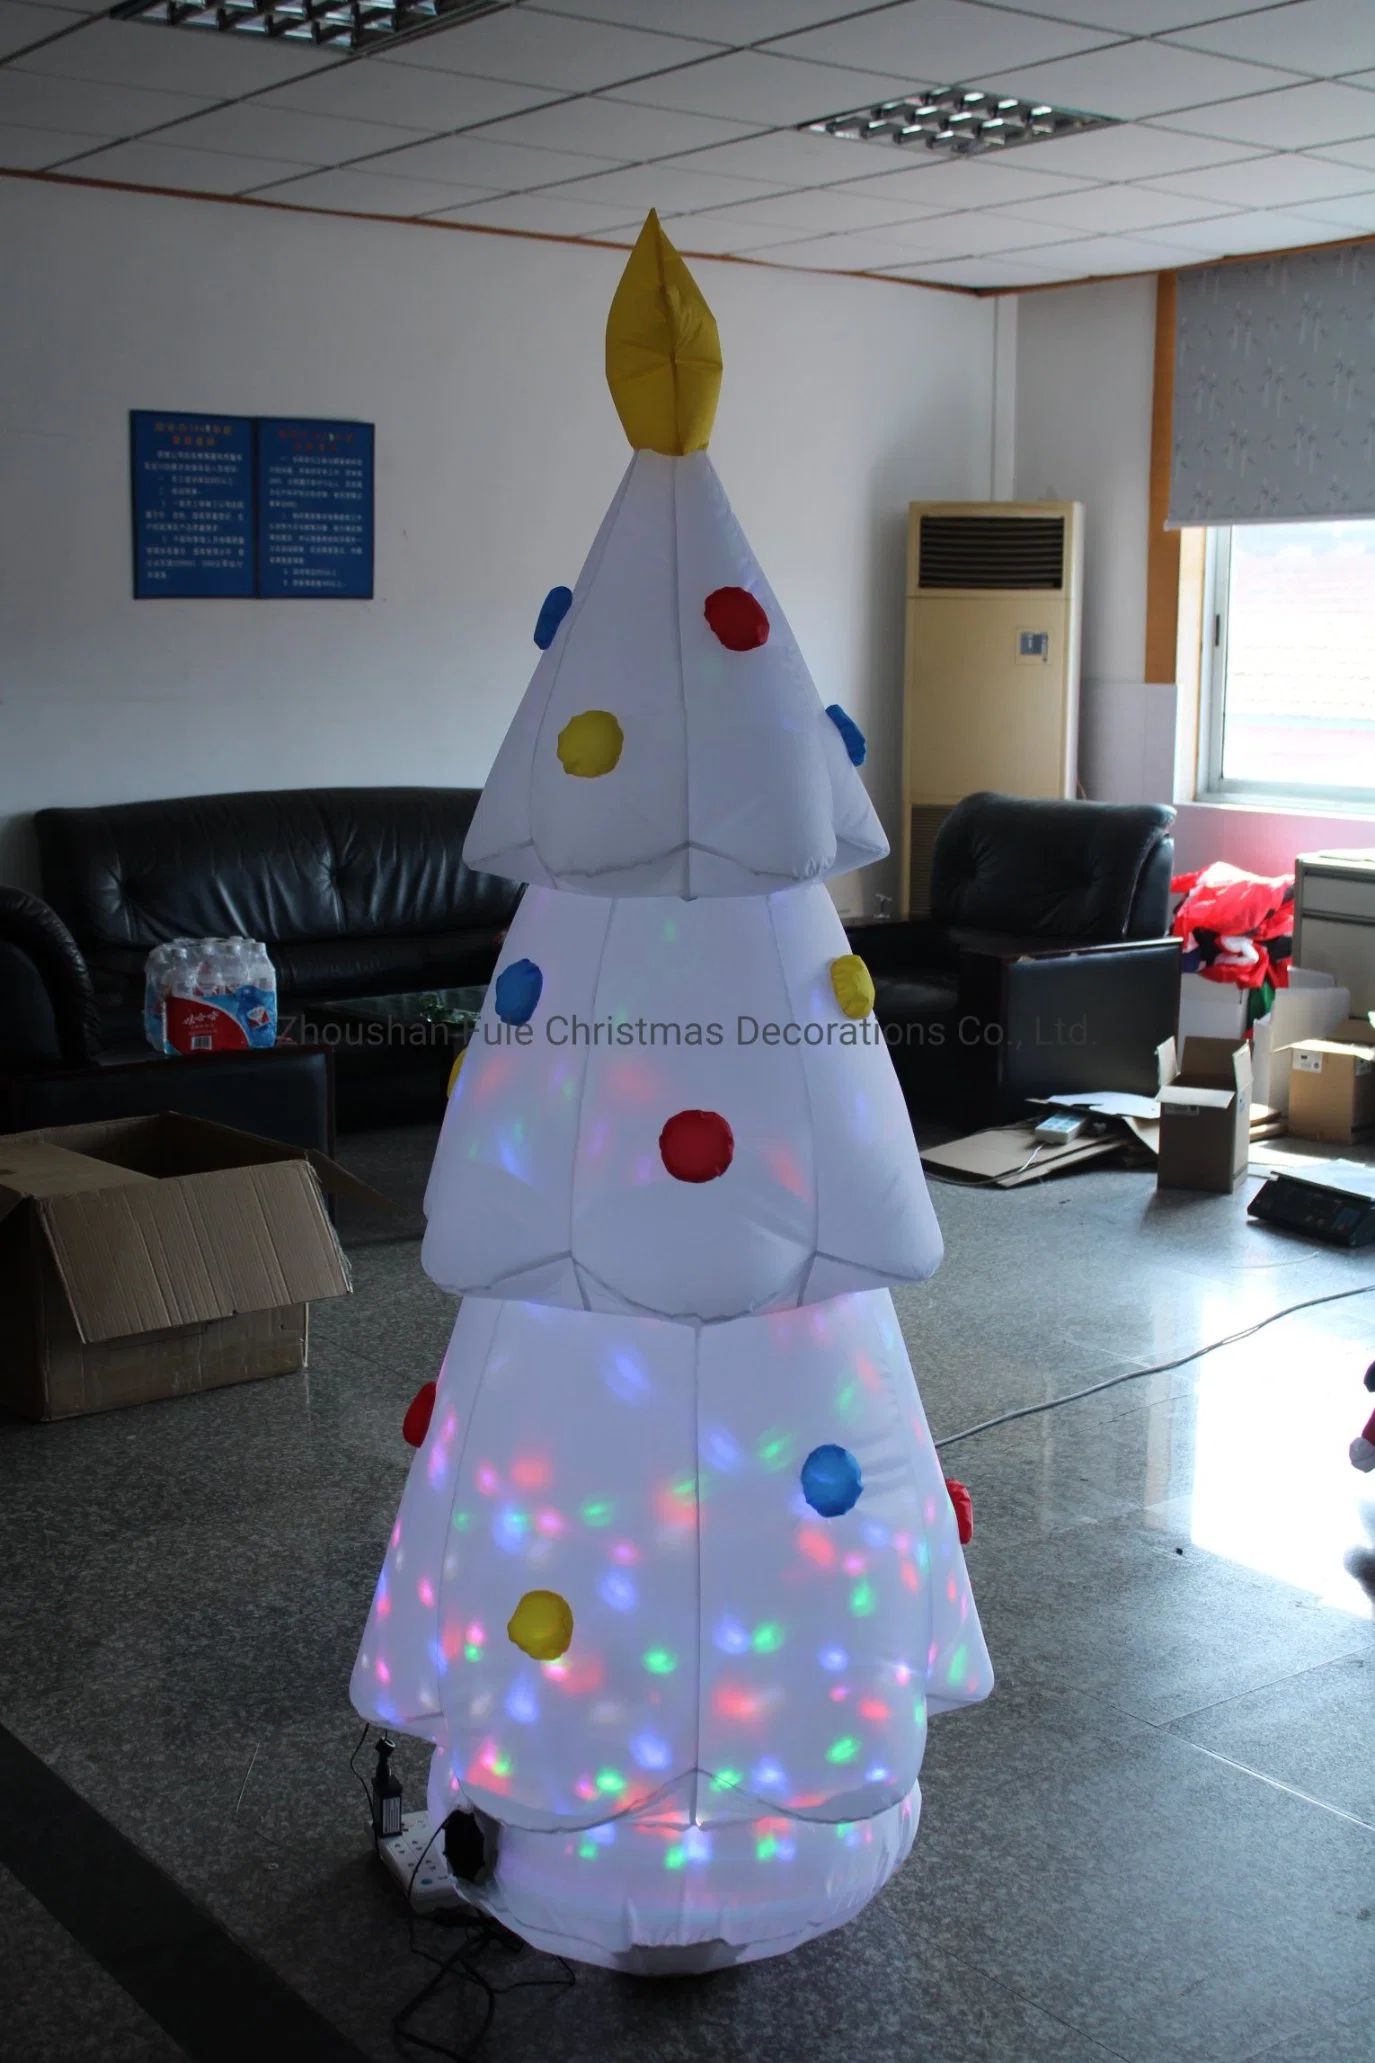 Chaud blanc gonflable Arbre de Noël avec LED de projection pour la maison de la décoration.